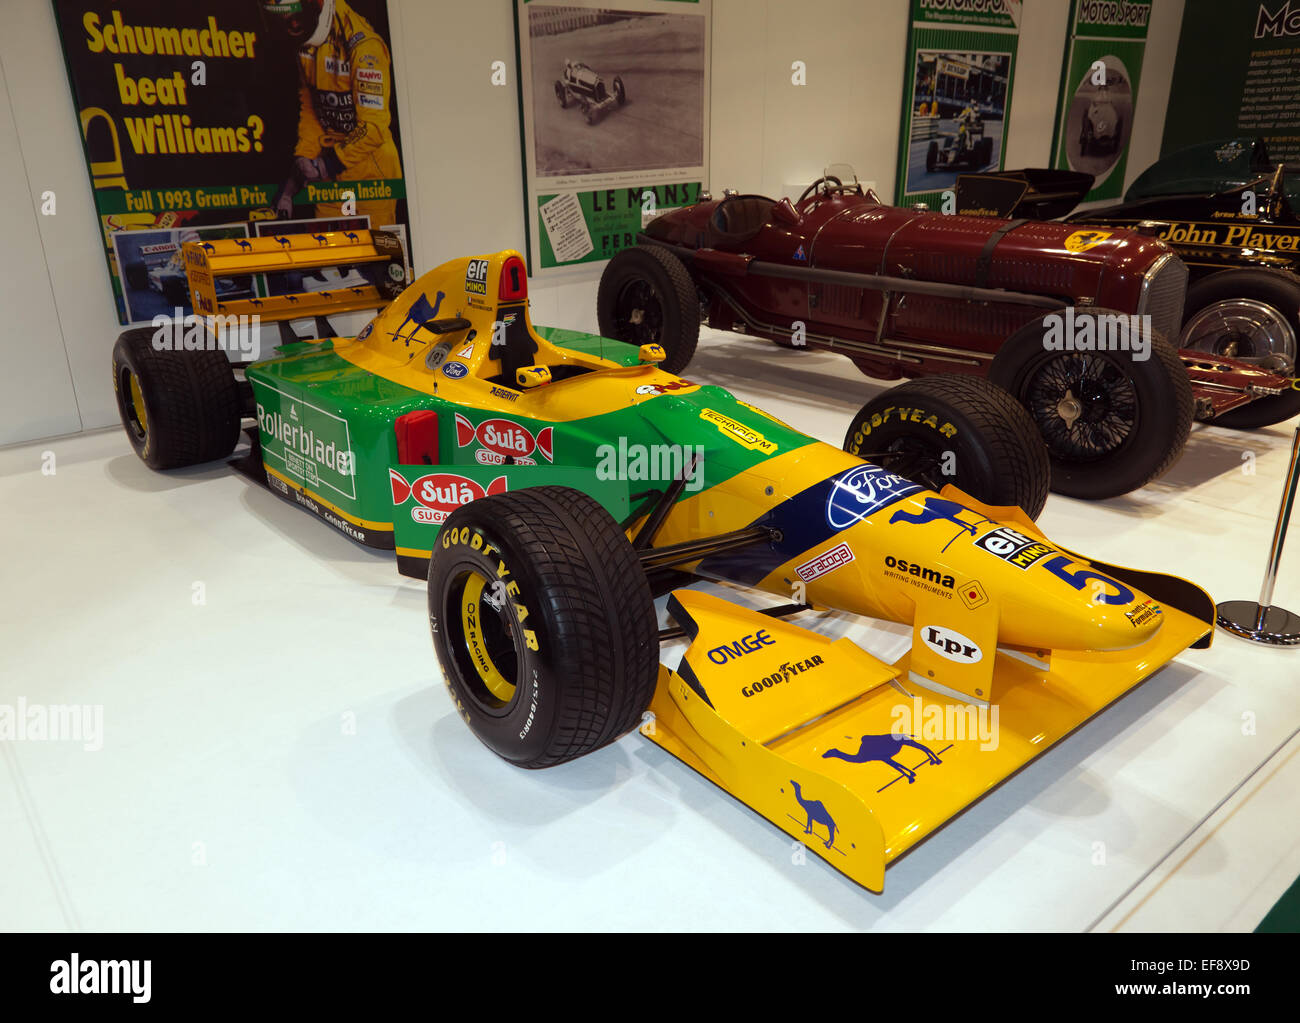 Schumachers 1993 Benetton B193: entworfen von Ross Brawn, Schumacher regelmäßig heraus qualifiziert Senna in diesem Auto. Stockfoto